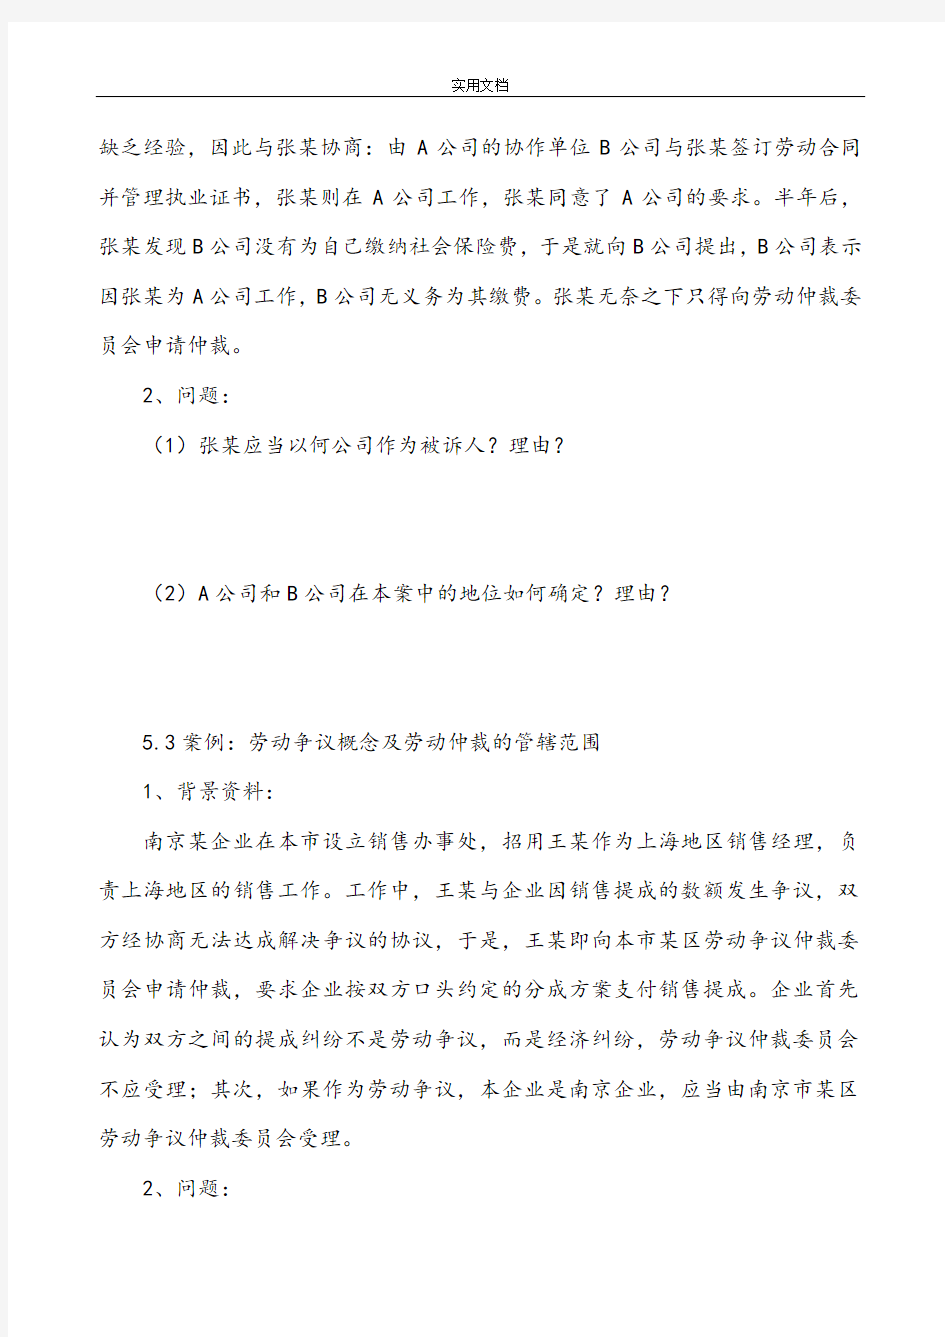 上海劳动关系协调员案例分析报告题E及问题详解